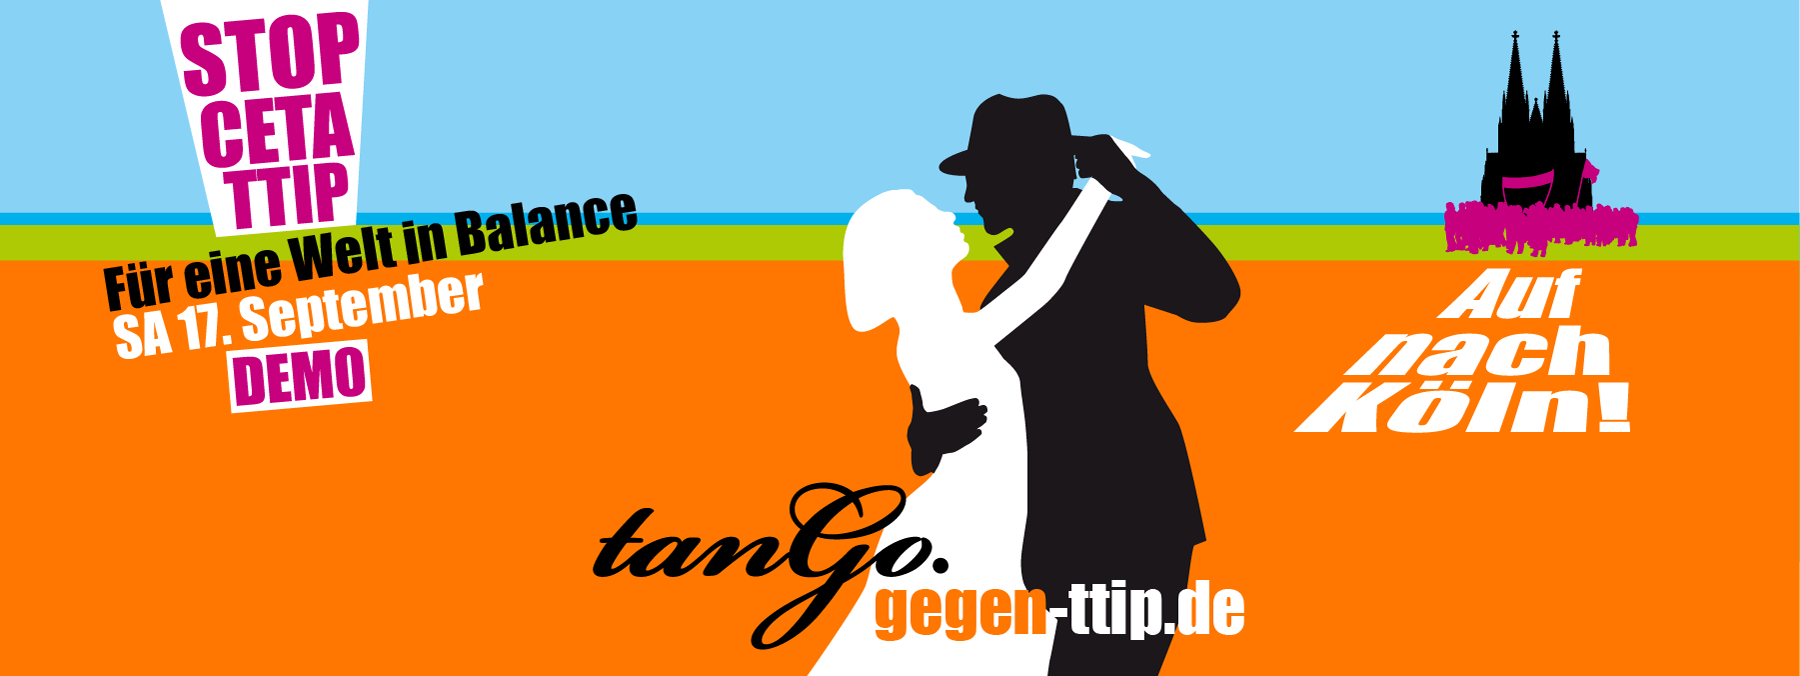 Tango gegen CETA